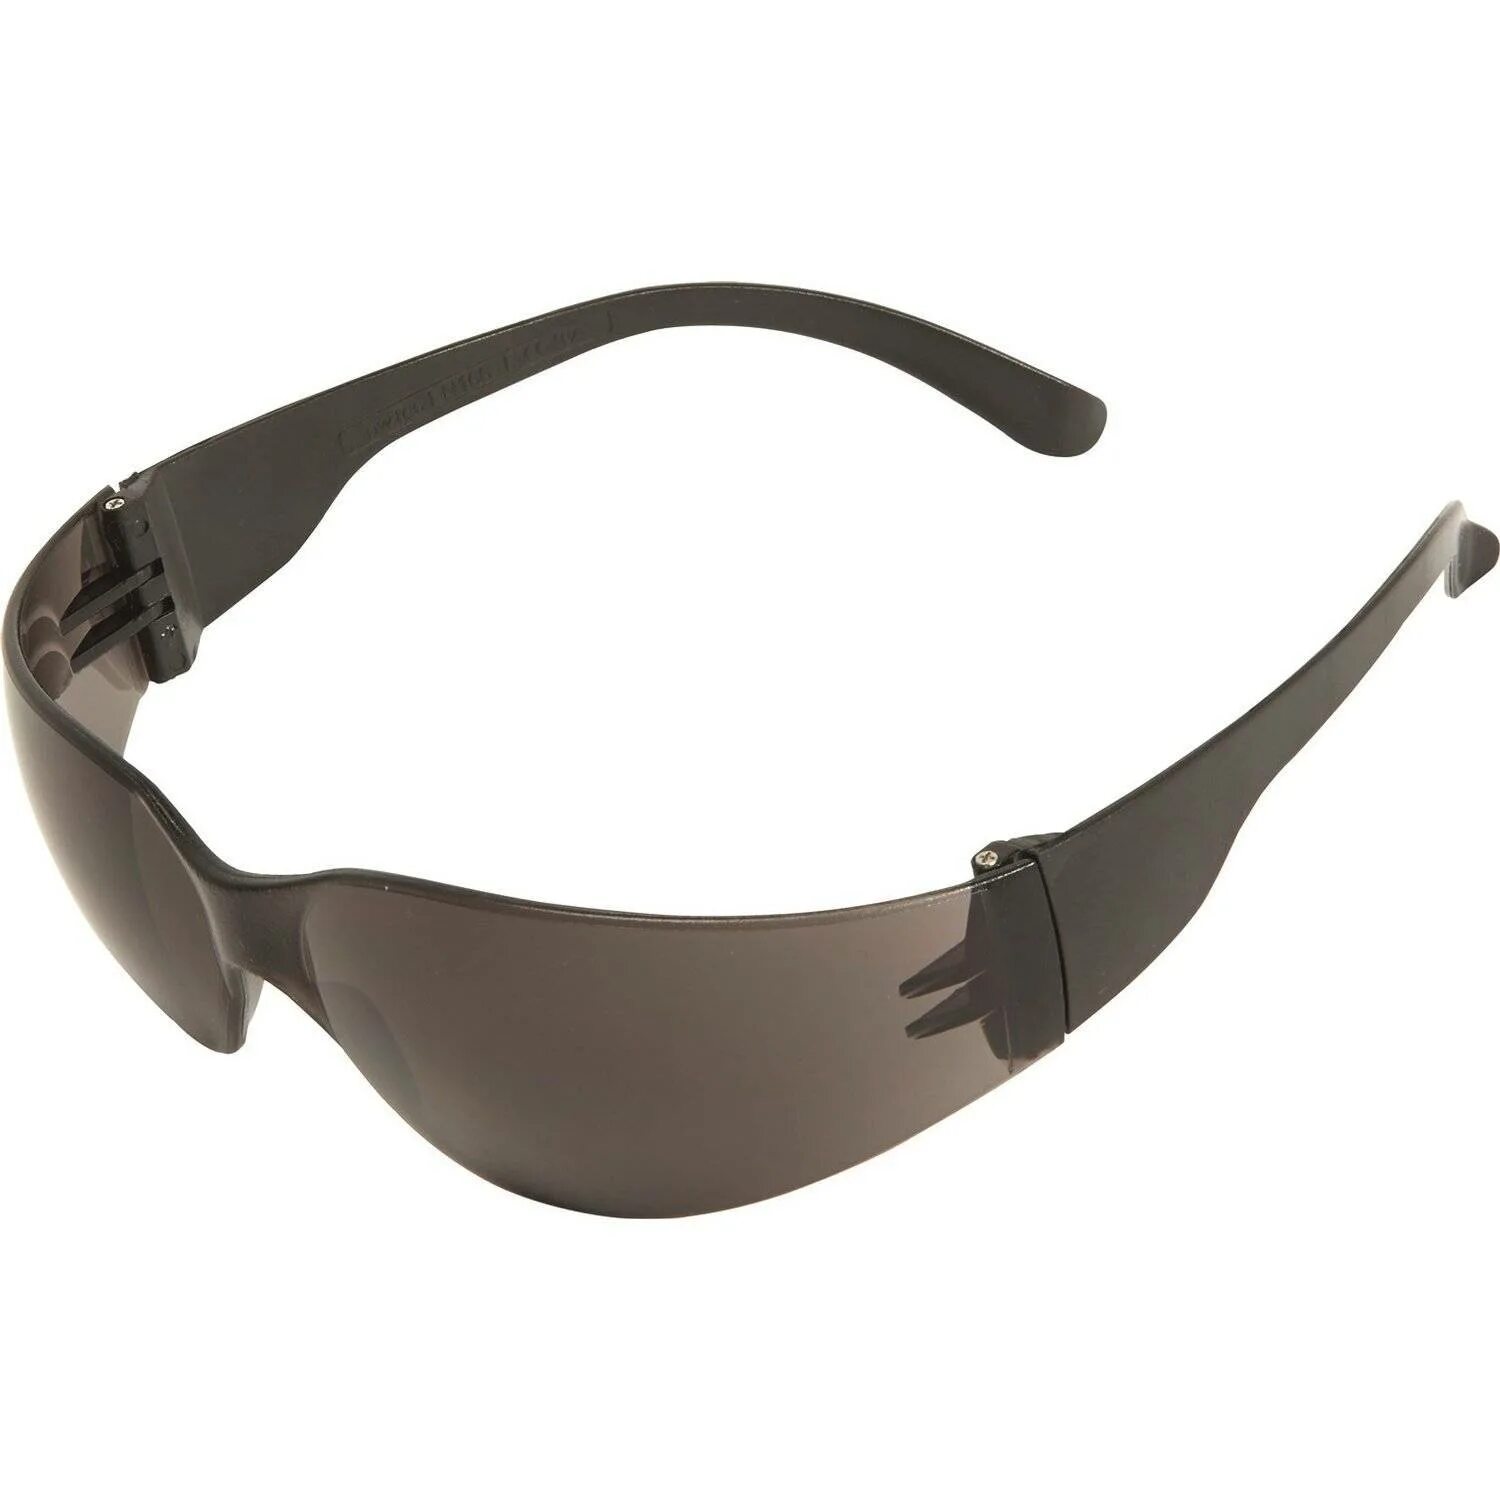 Купить строительные очки. Очки защитные contrast (тонированные стекла) Швейцария арт. 00008840328. Строительные очки. Строительные очки черные. Очки строительные защитные темные.